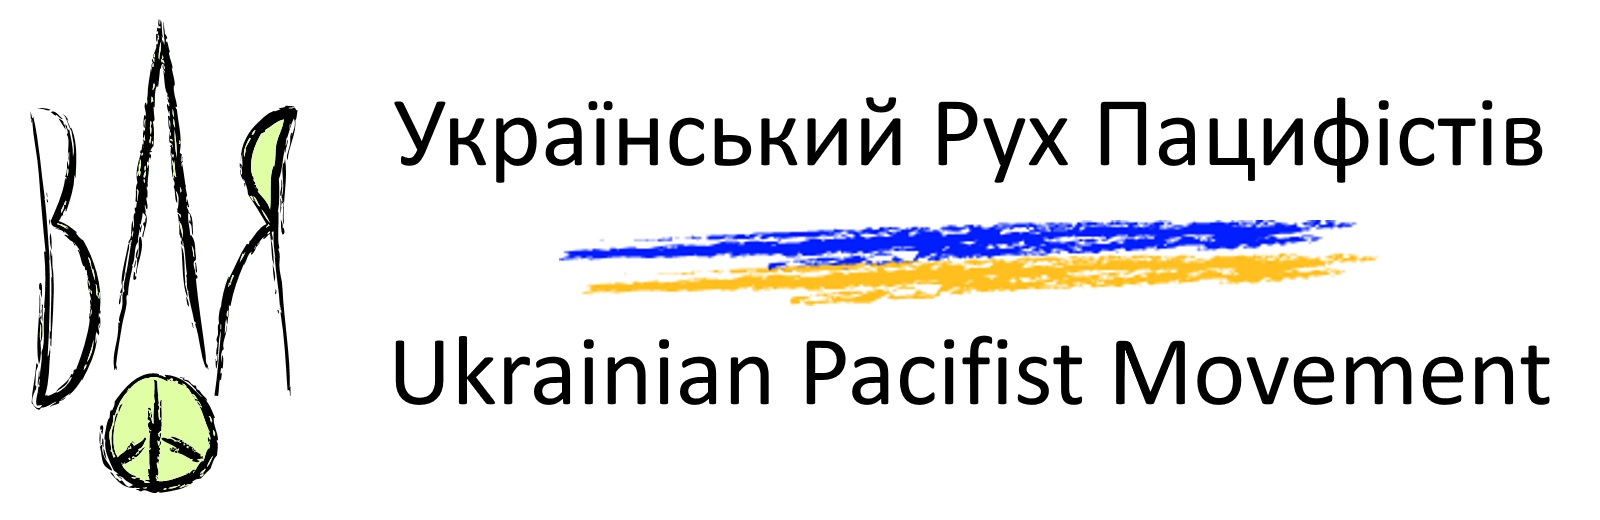 Український Рух Пацифістів | Ukrainian Pacifist Movement